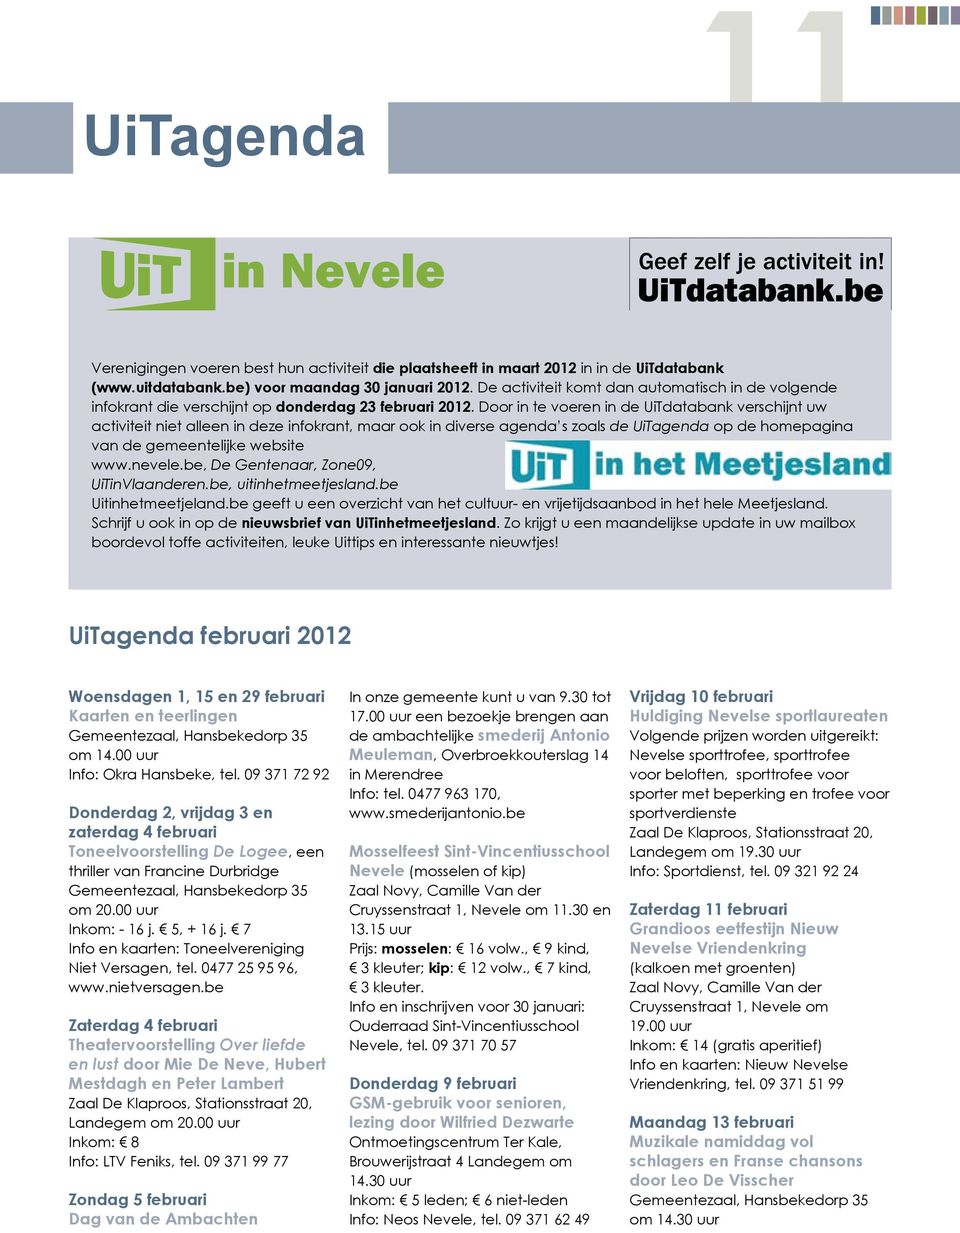 Door in te voeren in de UiTdatabank verschijnt uw activiteit niet alleen in deze infokrant, maar ook in diverse agenda s zoals de UiTagenda op de homepagina van de gemeentelijke website www.nevele.